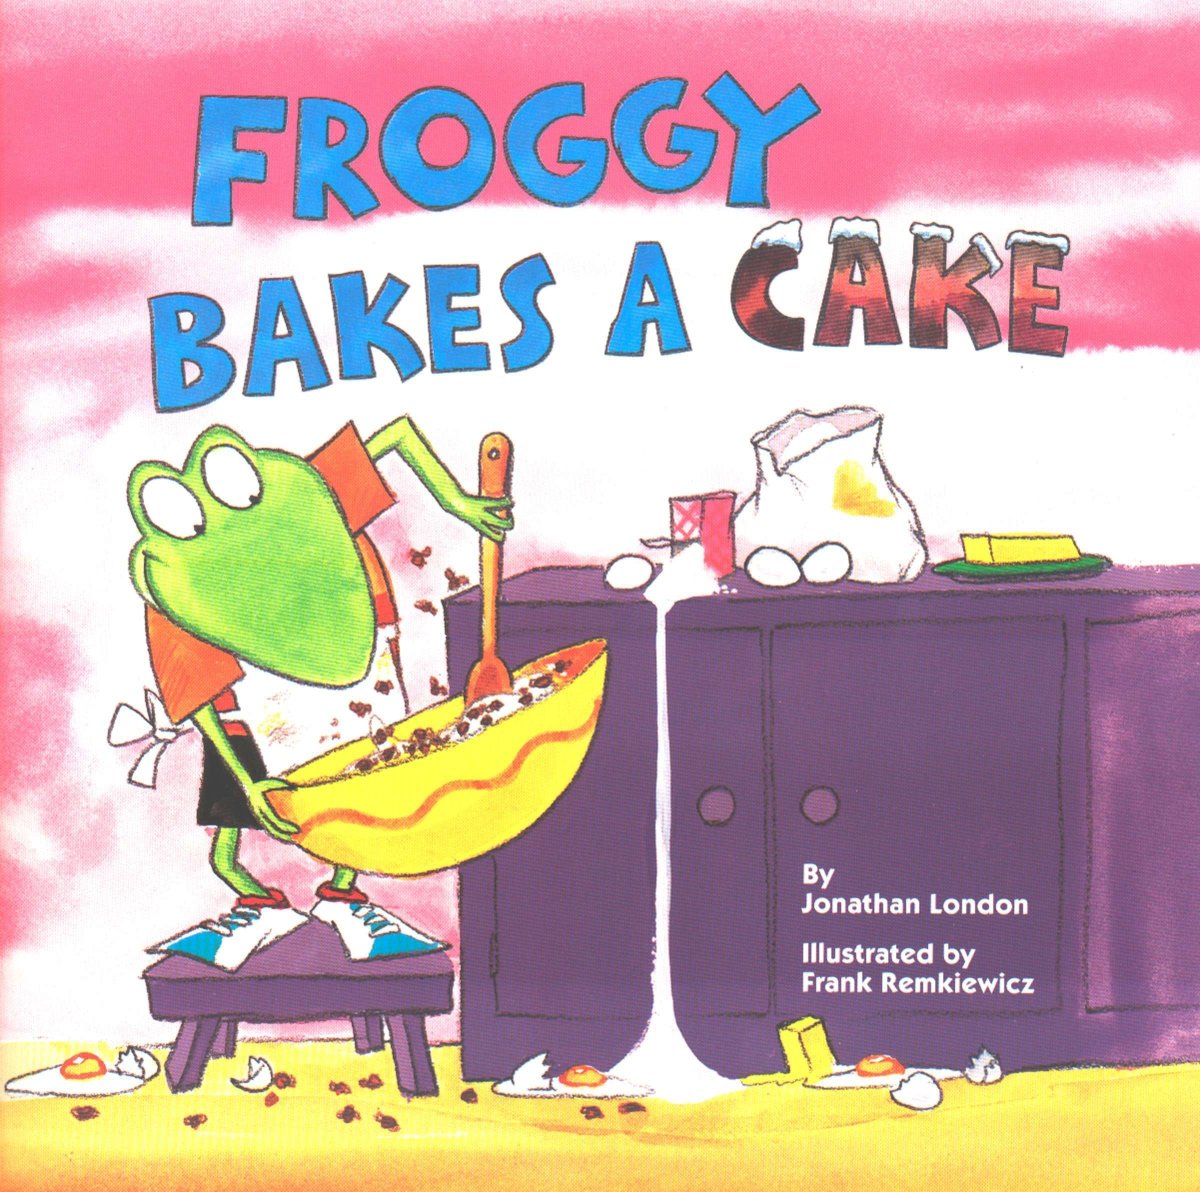 乔纳森·伦敦的《青蛙烤蛋糕》和乔纳森·伦敦的《青蛙学会游泳》只是这个系列30多本书中的两本。